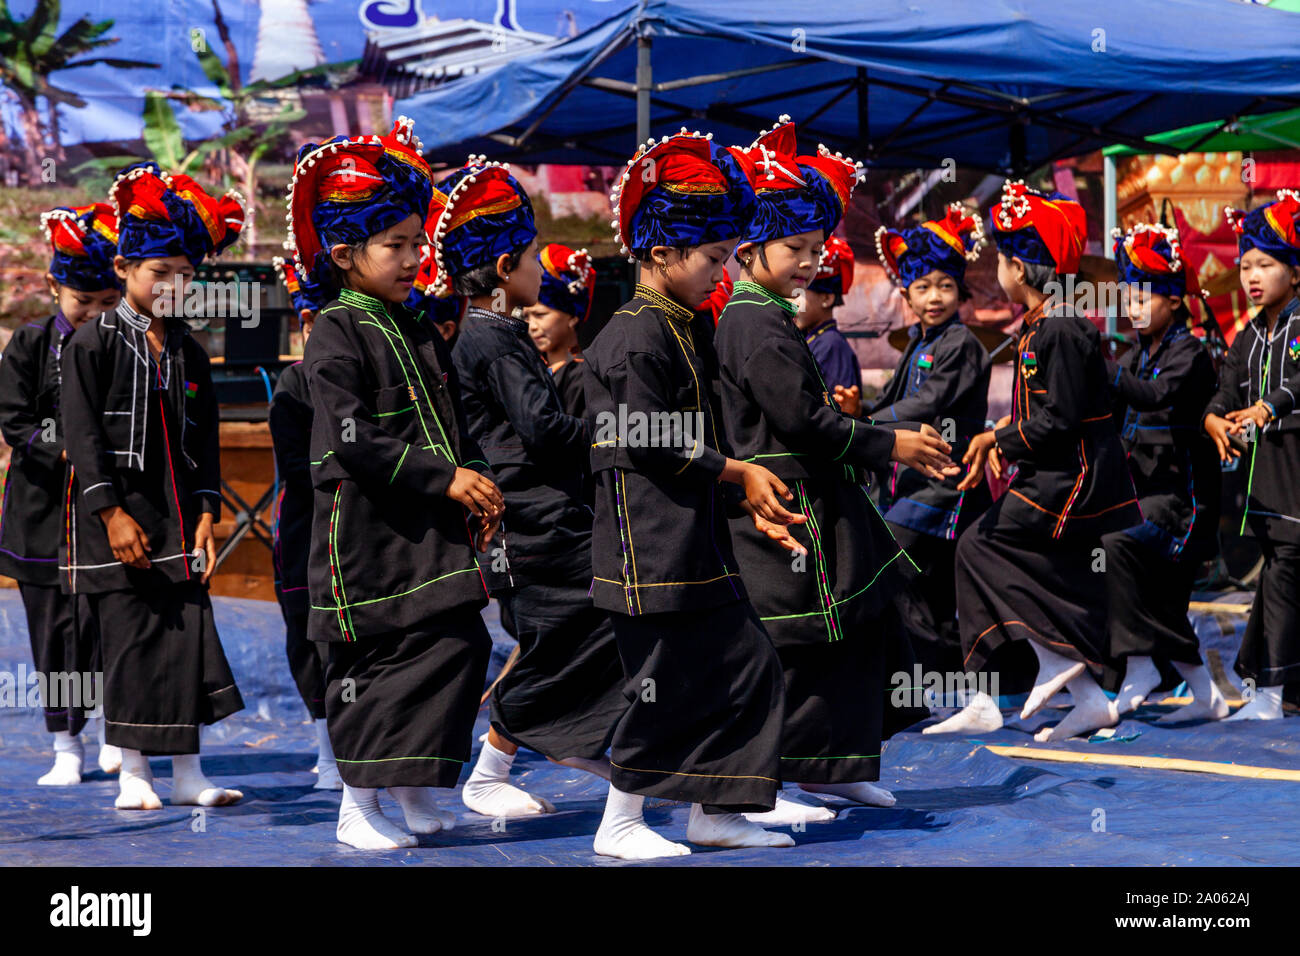 Bambini da pa'o gruppo etnico prendere parte in una danza tradizionale spettacolo al Kakku Pagoda Festival, Taunggyi, Stato Shan, Myanmar. Foto Stock